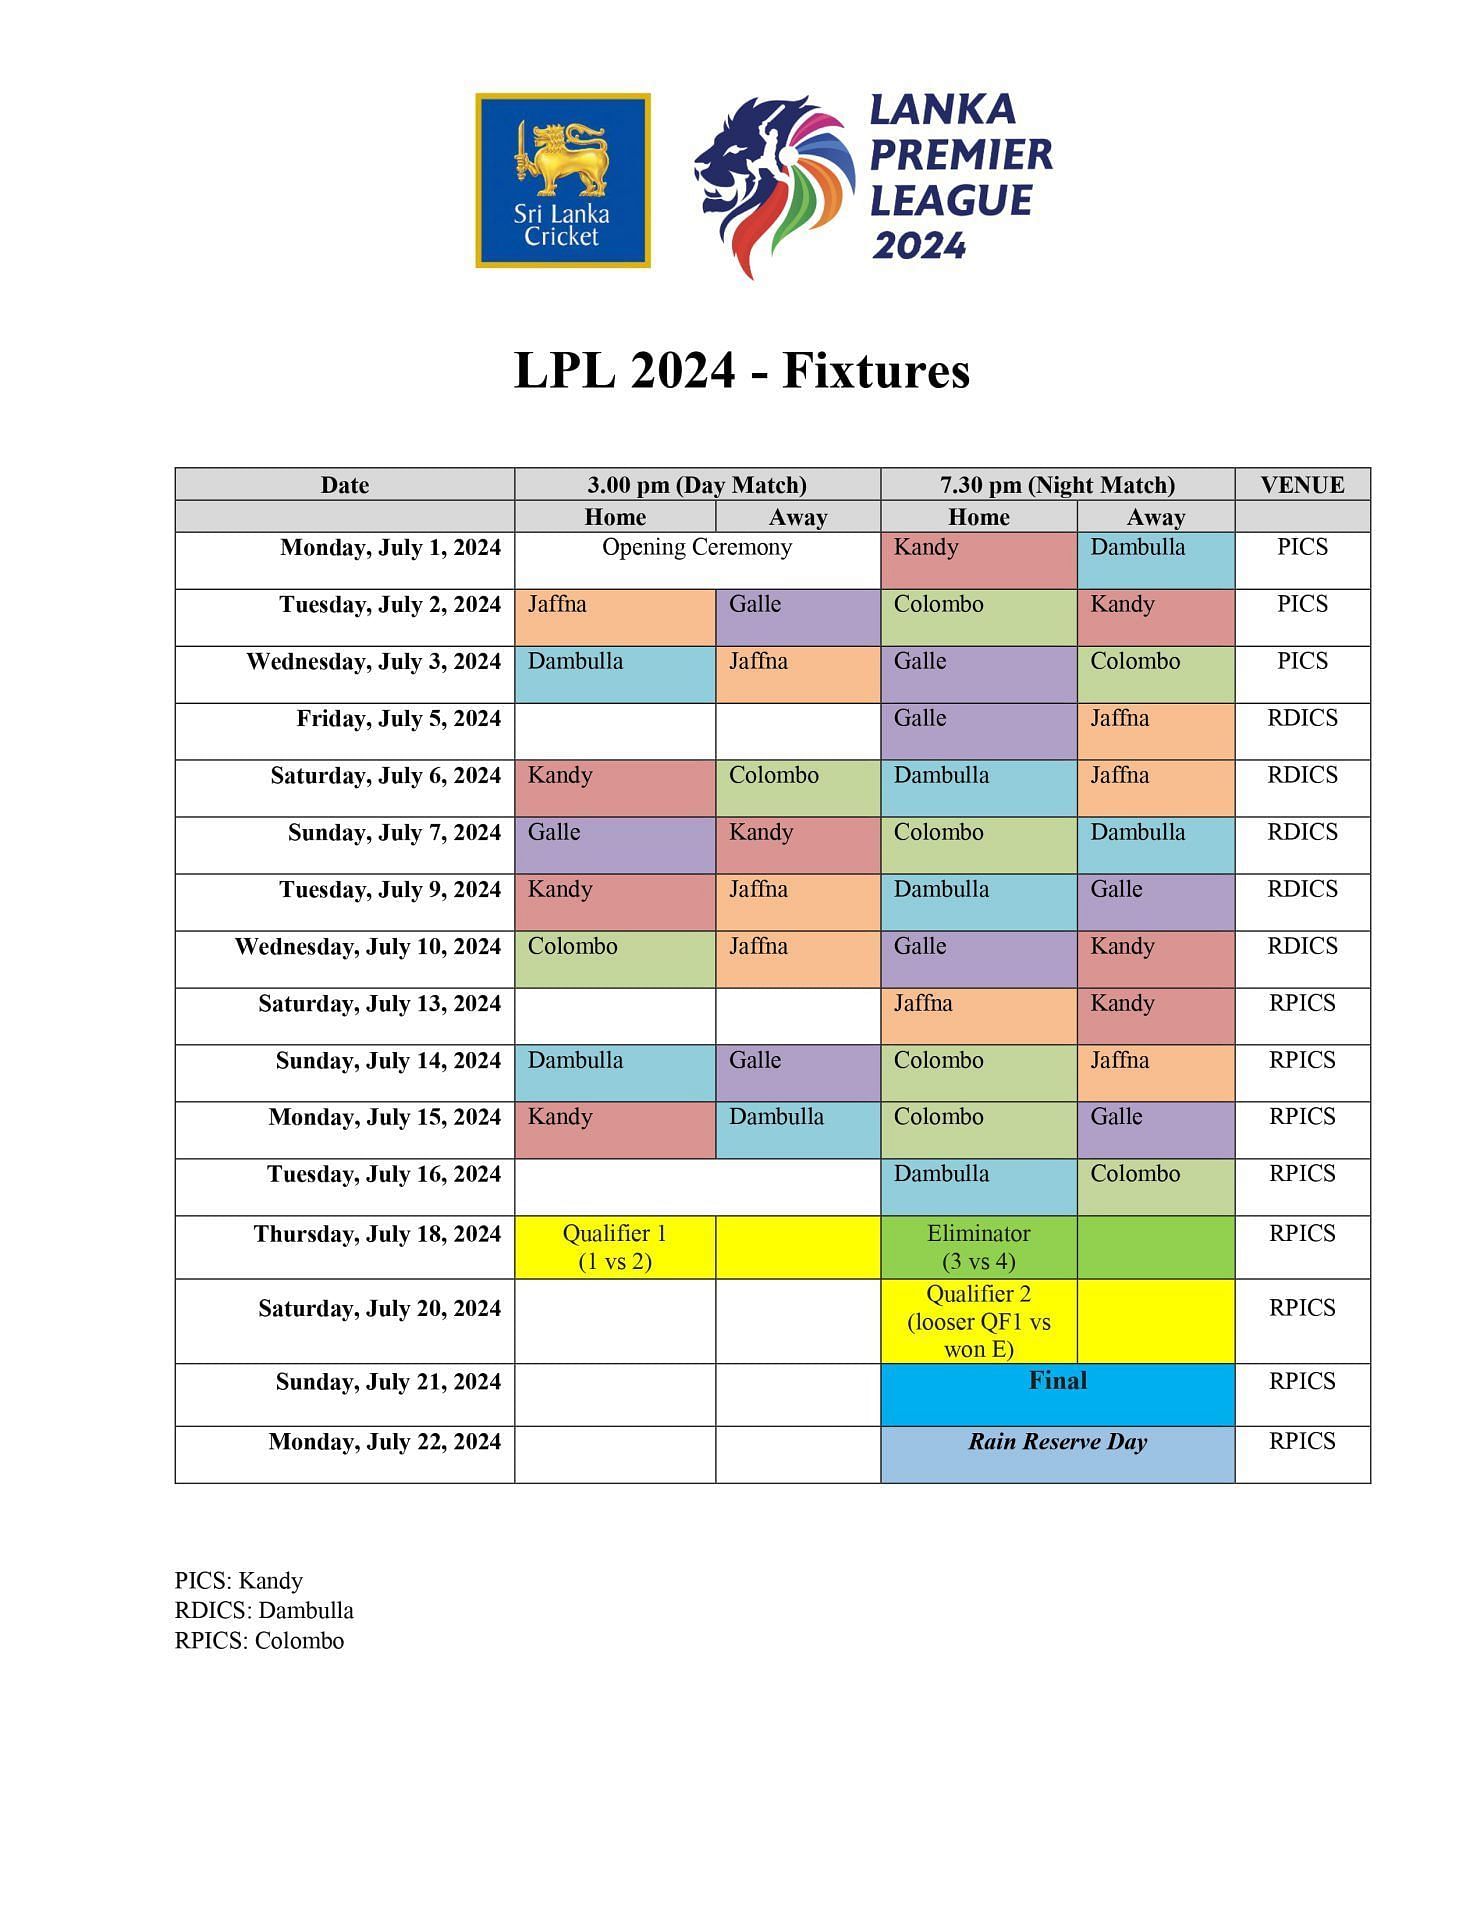 Complete schedule of Lanka Premier League (LPL) 2024